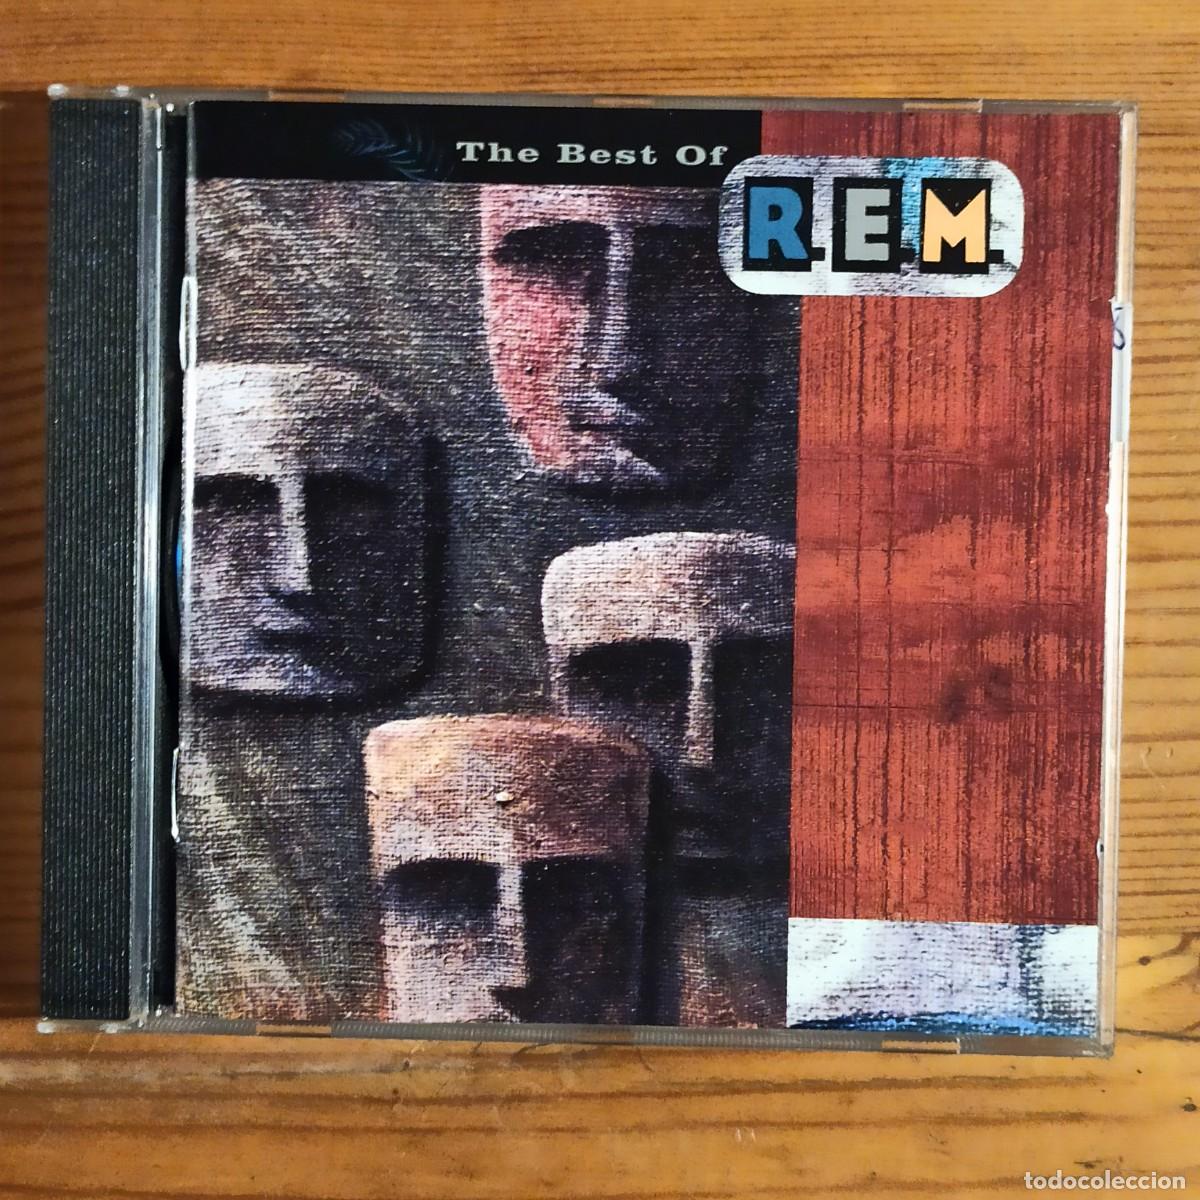 cd the best of r.e.m. - Buy CD's of Pop Music on todocoleccion